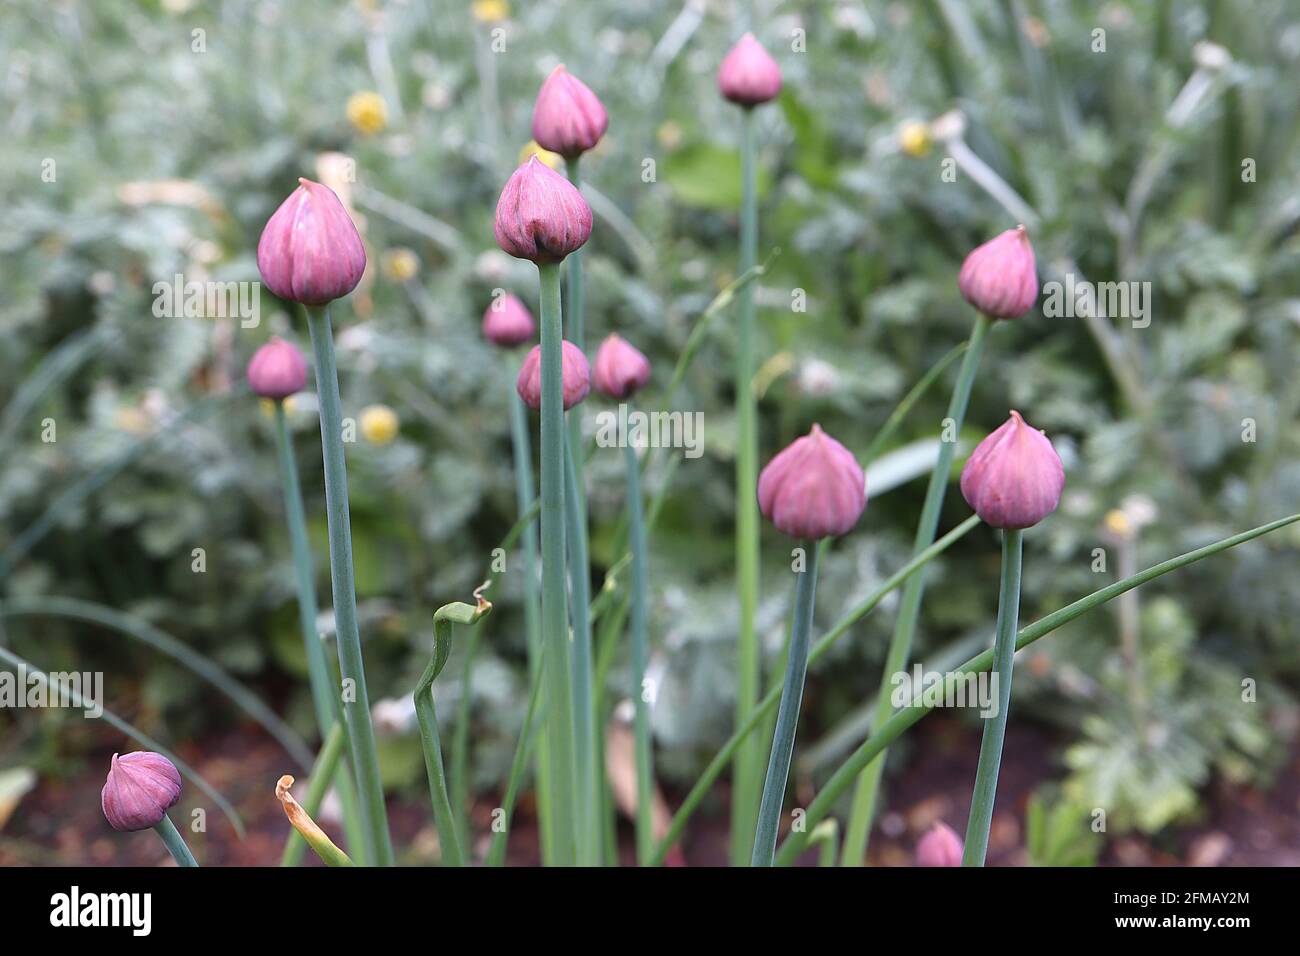 Allium schoenoprasum Knospen Klümchenknospen – Gruppe von kleinen Zwiebelkuppelförmigen hellvioletten Blütenknospen, Mai, England, Großbritannien Stockfoto